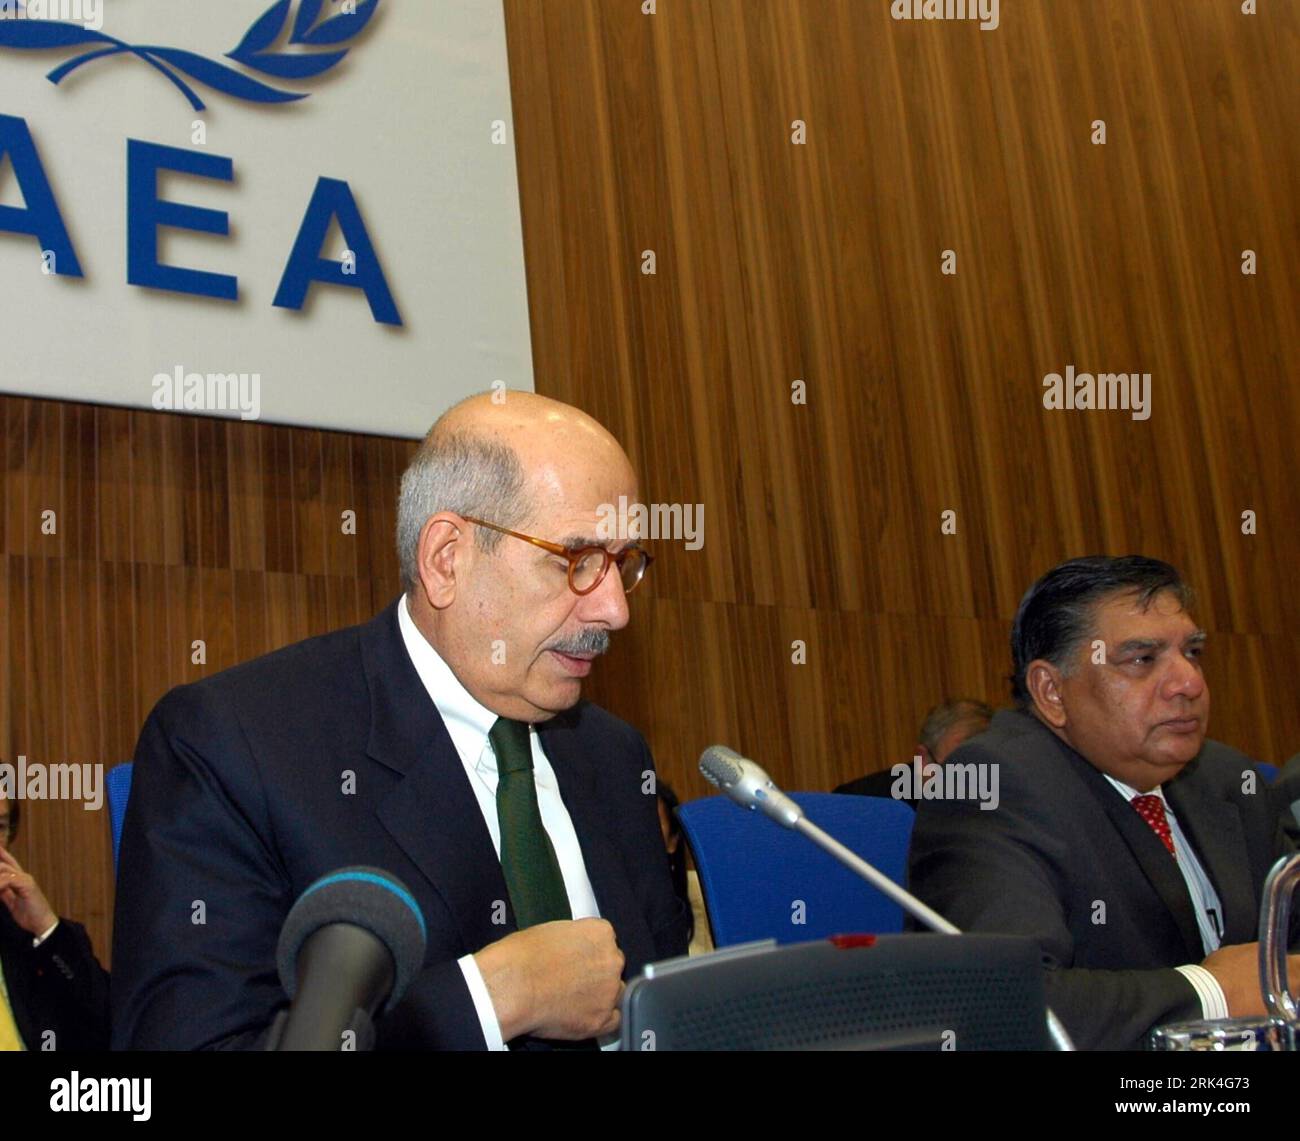 Bildnummer : 53629046 Datum : 26.11.2009 Copyright : imago/Xinhua (091126) -- VIENNE, 26 novembre 2009 (Xinhua) -- le Directeur général de l'Agence internationale de l'énergie atomique (AIEA) Mohamed ElBaradei (L) prend la parole devant le Conseil des gouverneurs de l'AIEA à Vienne, Autriche, 26 novembre 2009. La réunion axée sur la question nucléaire iranienne a eu lieu jeudi. (Xinhua/Liu Gang) (zcq) (2)AUSTRIA-AIEA-MEETING PUBLICATIONxNOTxINxCHN People Politik kbdig xmk 2009 quadrat premiumd Bildnummer 53629046 Date 26 11 2009 Copyright Imago XINHUA Vienne nov. 26 2009 XINHUA Agence internationale de l'énergie atomique Directeur de l'AIEA GE Banque D'Images